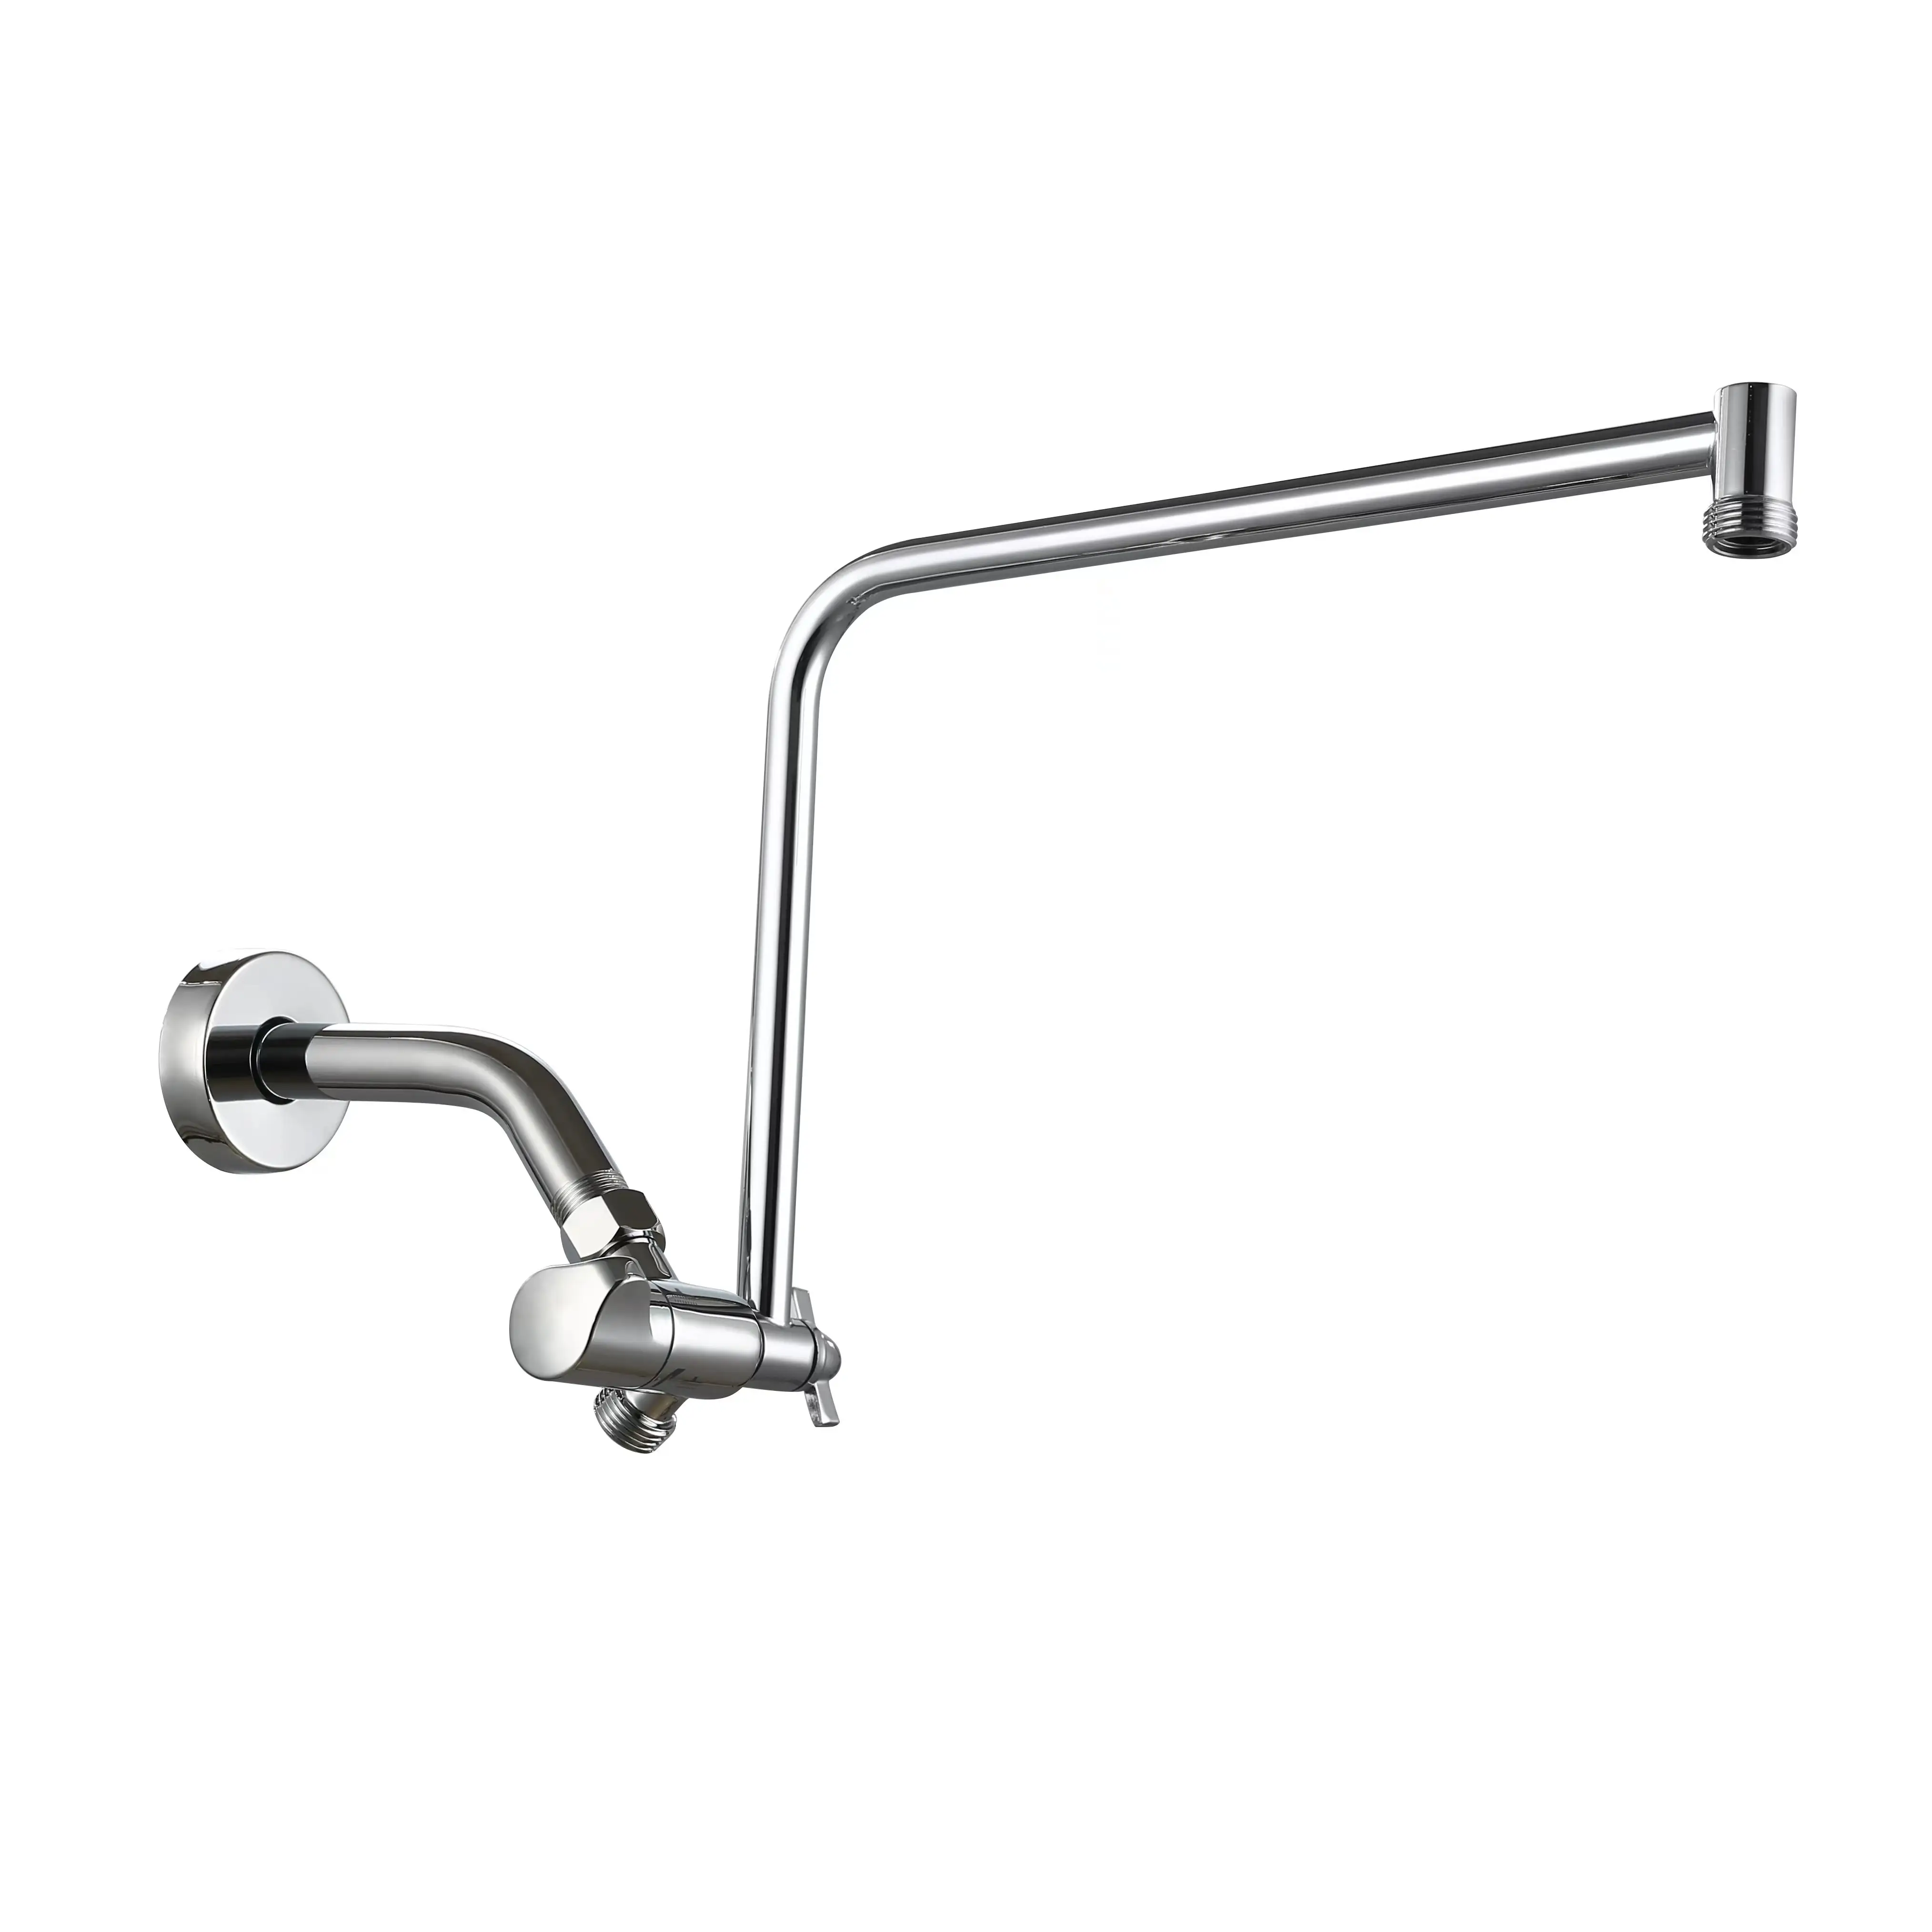 Desviador de 3 vías de latón macizo de conexión Universal, brazo de baño, ángulo ajustable, brazo de ducha Flexible extensible antifugas